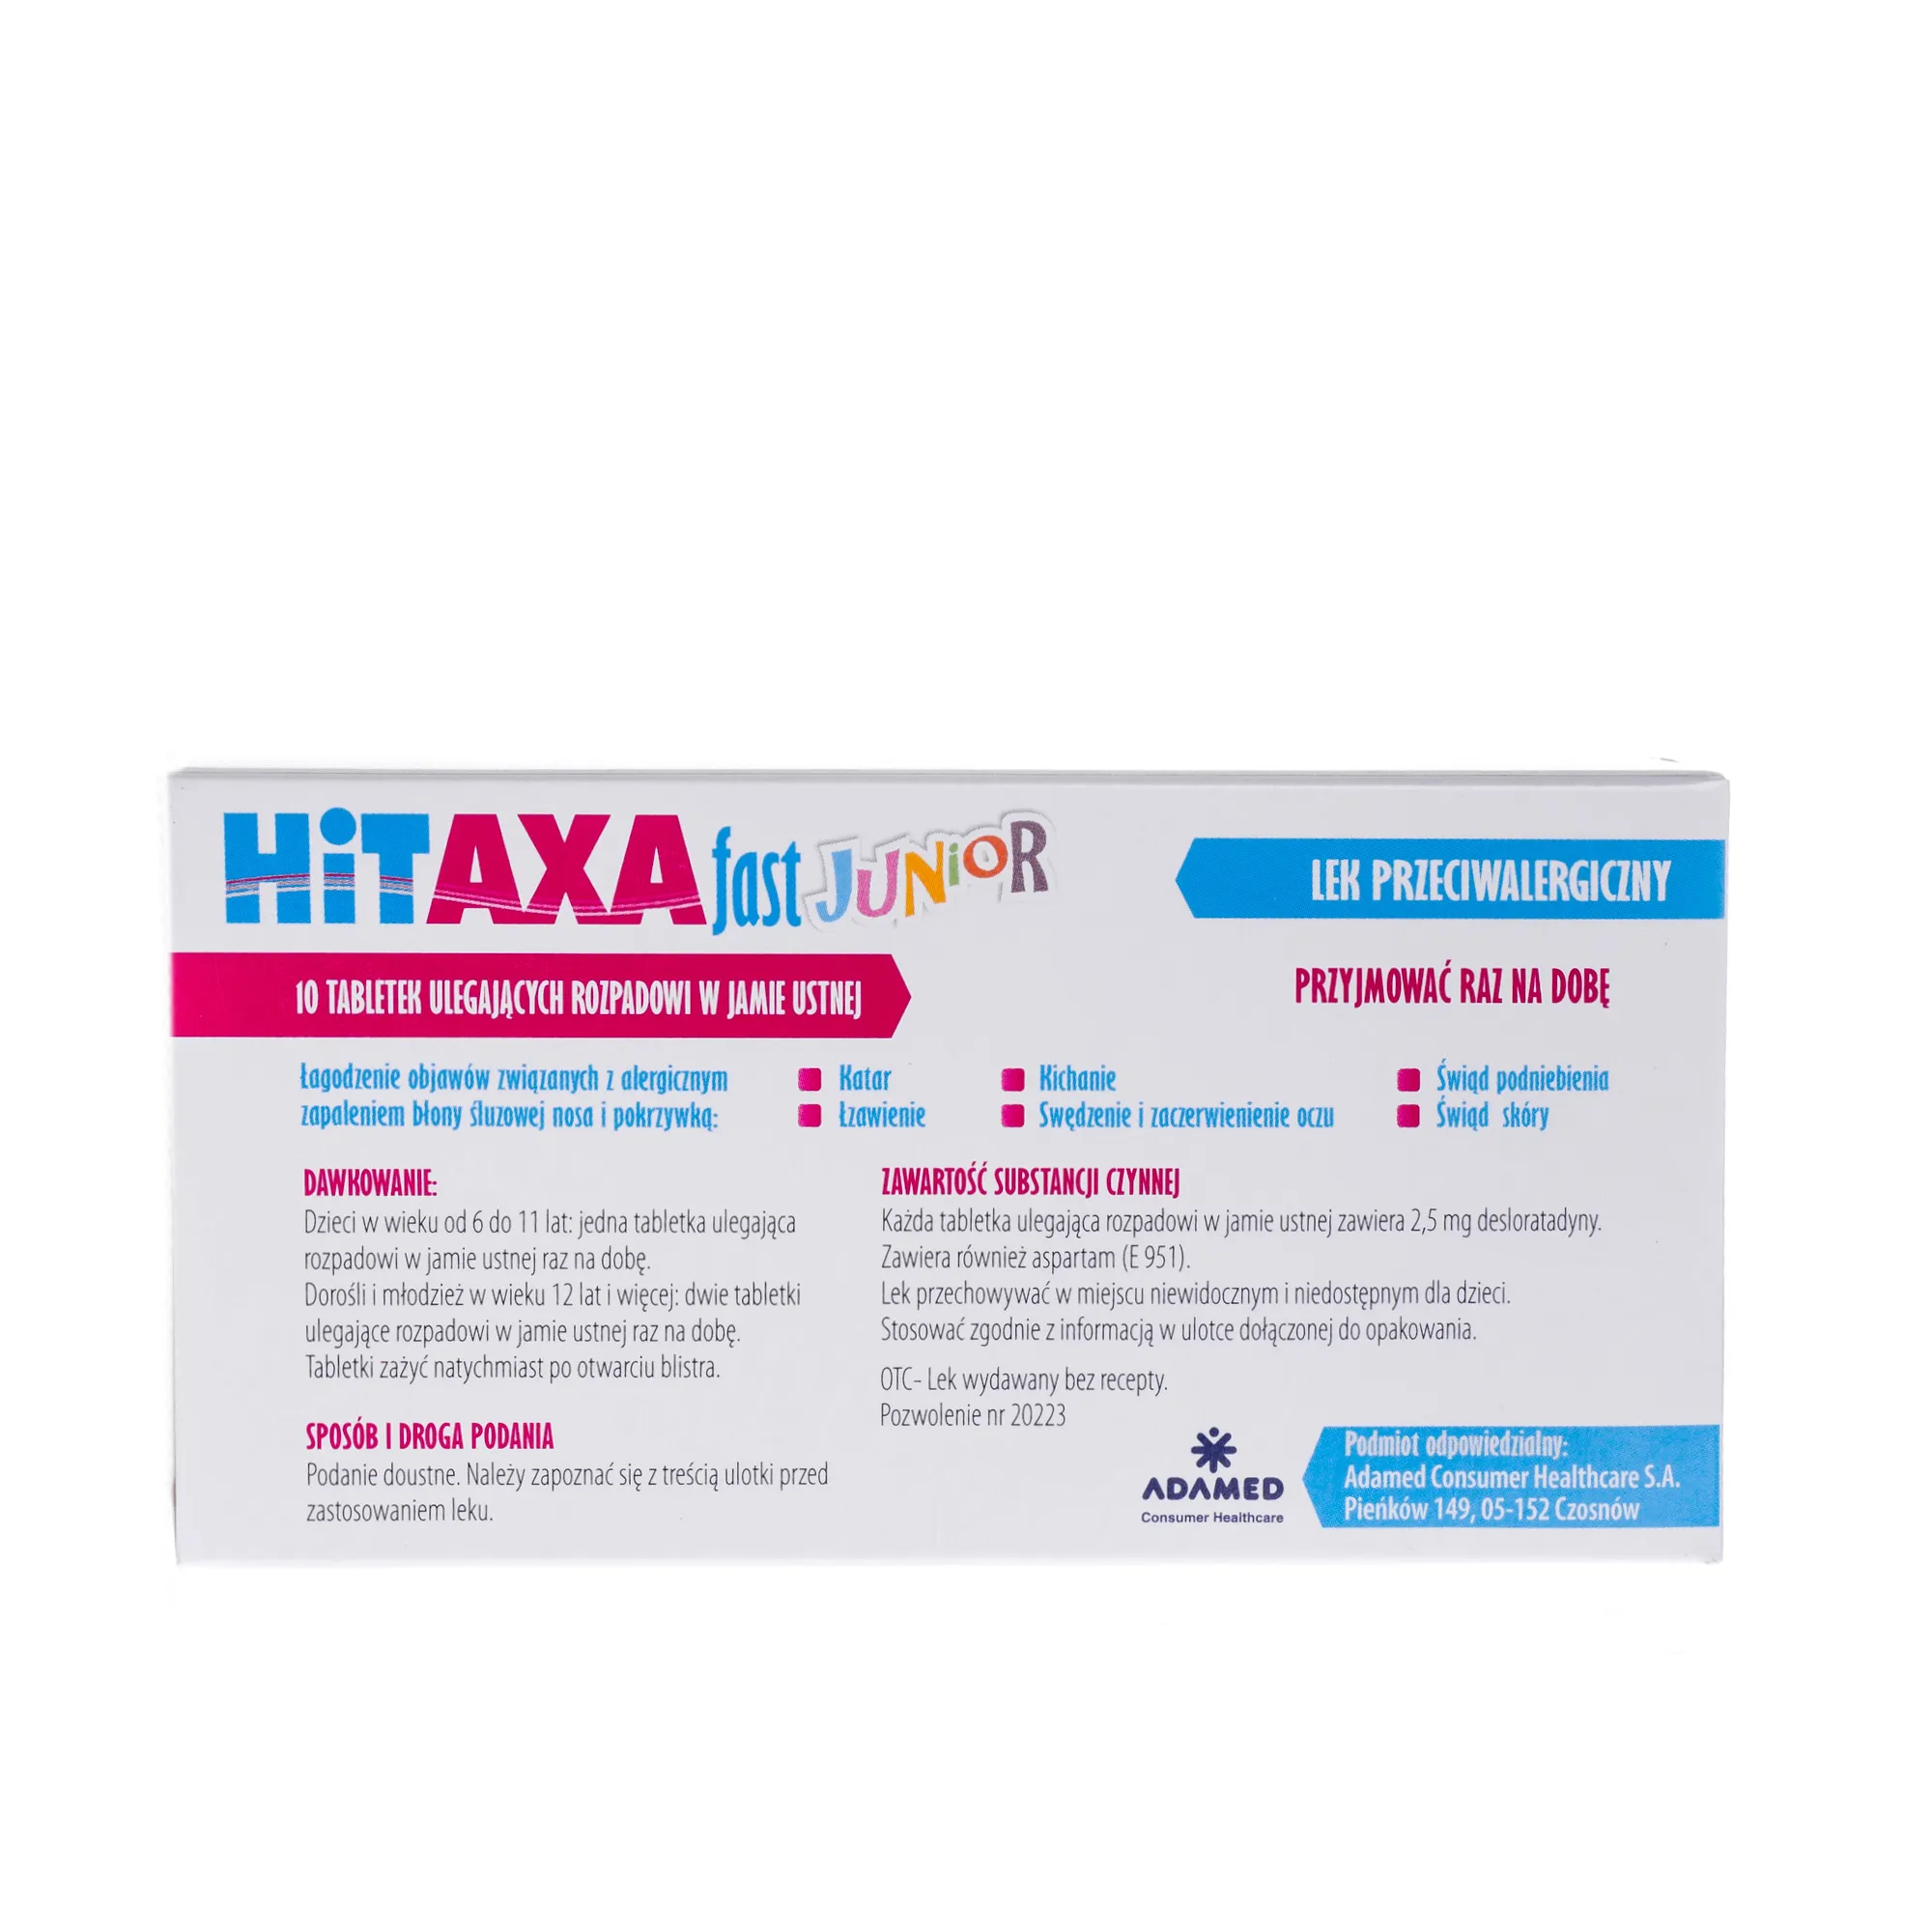 Hitaxa fast junior, 2,5 mg, 10 tabletek ulegających rozpadowi w jamie ustnej 